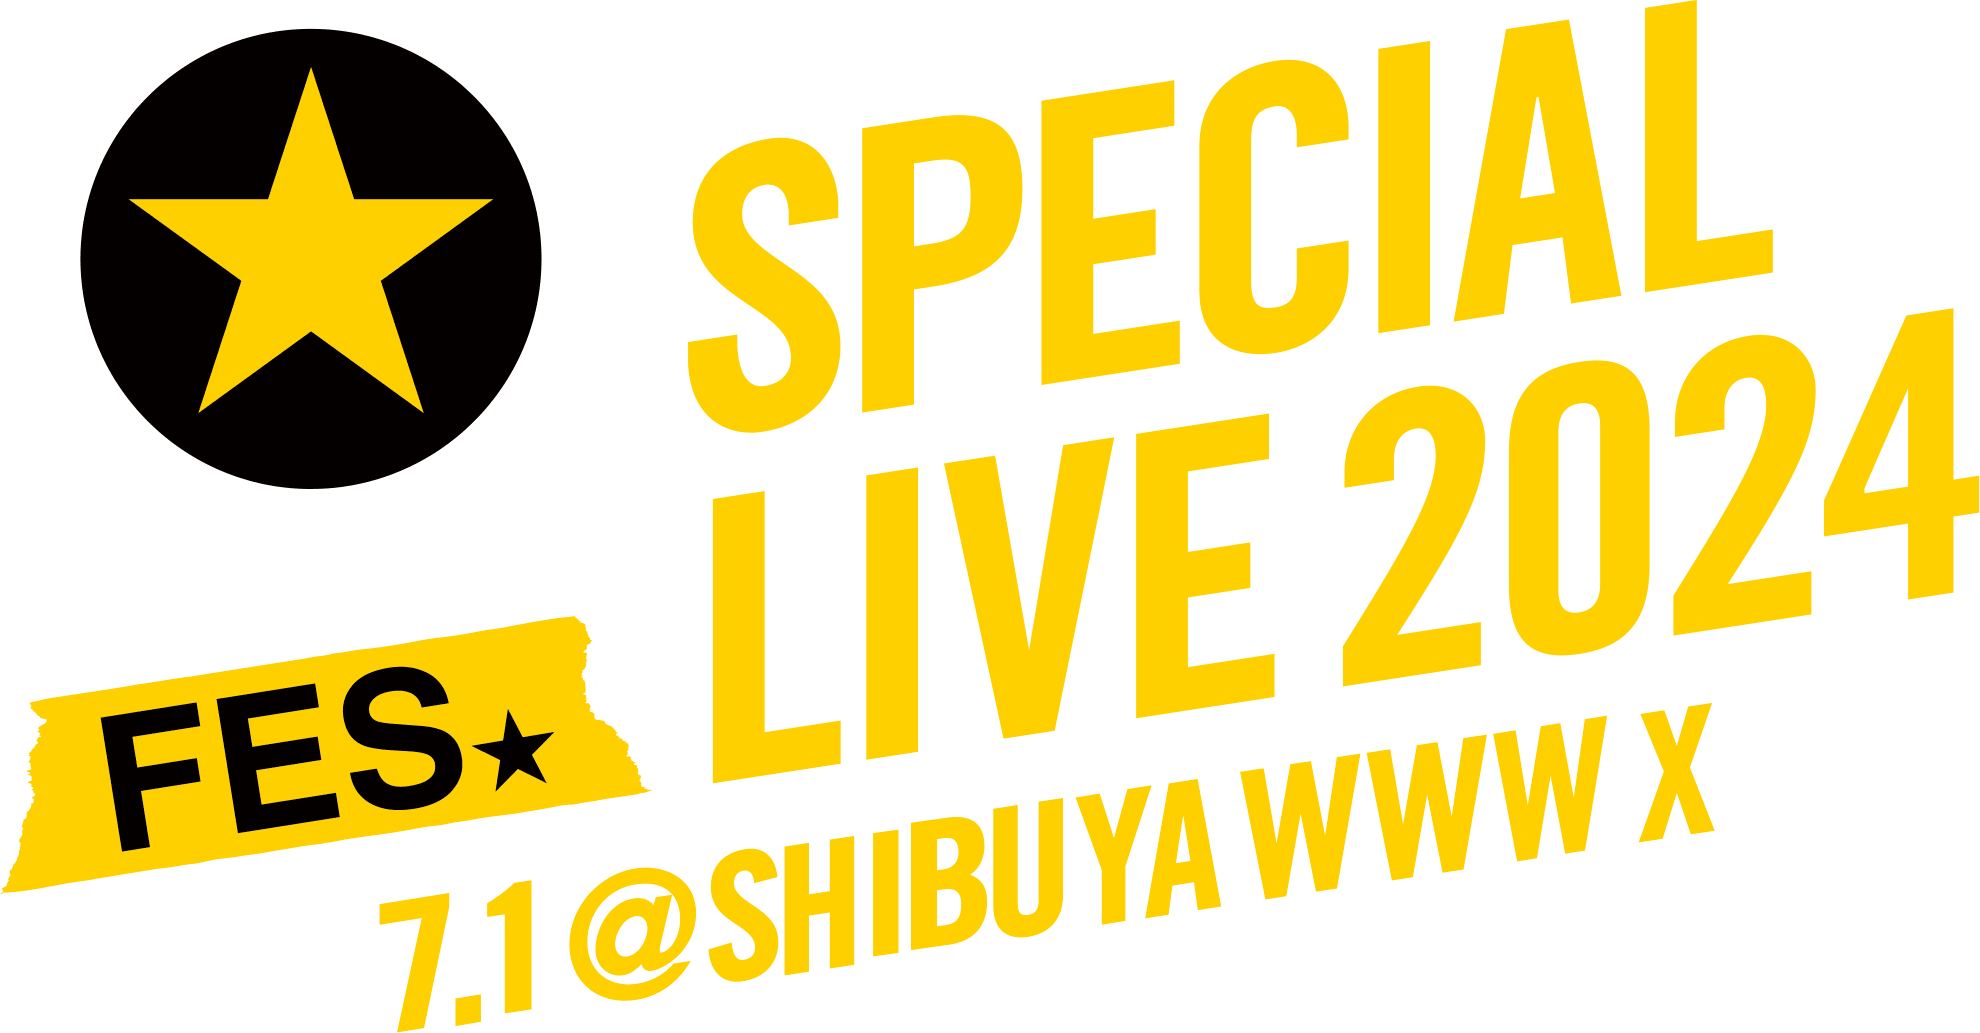 黒ラベルFES SPECIAL LIVE 2024 7.1@SHIBUYA WWW X